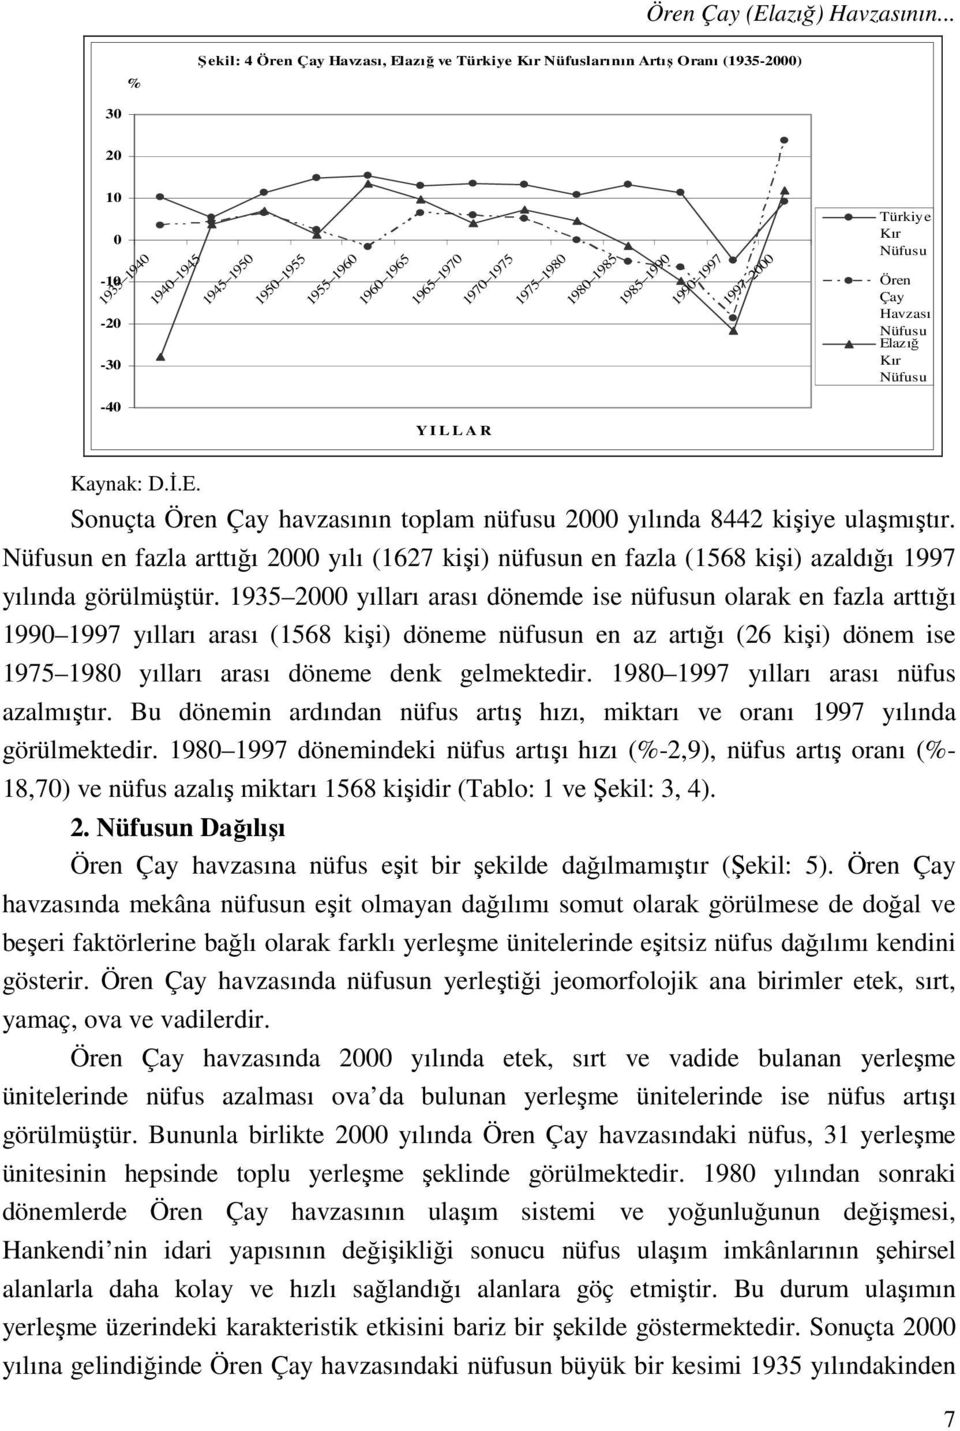 1980 1980 1985 1985 1990 1990 1997 1997 2000 Türkiye Kır Nüfusu Ören Çay Havzası Nüfusu Elazığ Kır Nüfusu -40 Y I L L A R Kaynak: D.İ.E. Sonuçta Ören Çay havzasının toplam nüfusu 2000 yılında 8442 kişiye ulaşmıştır.